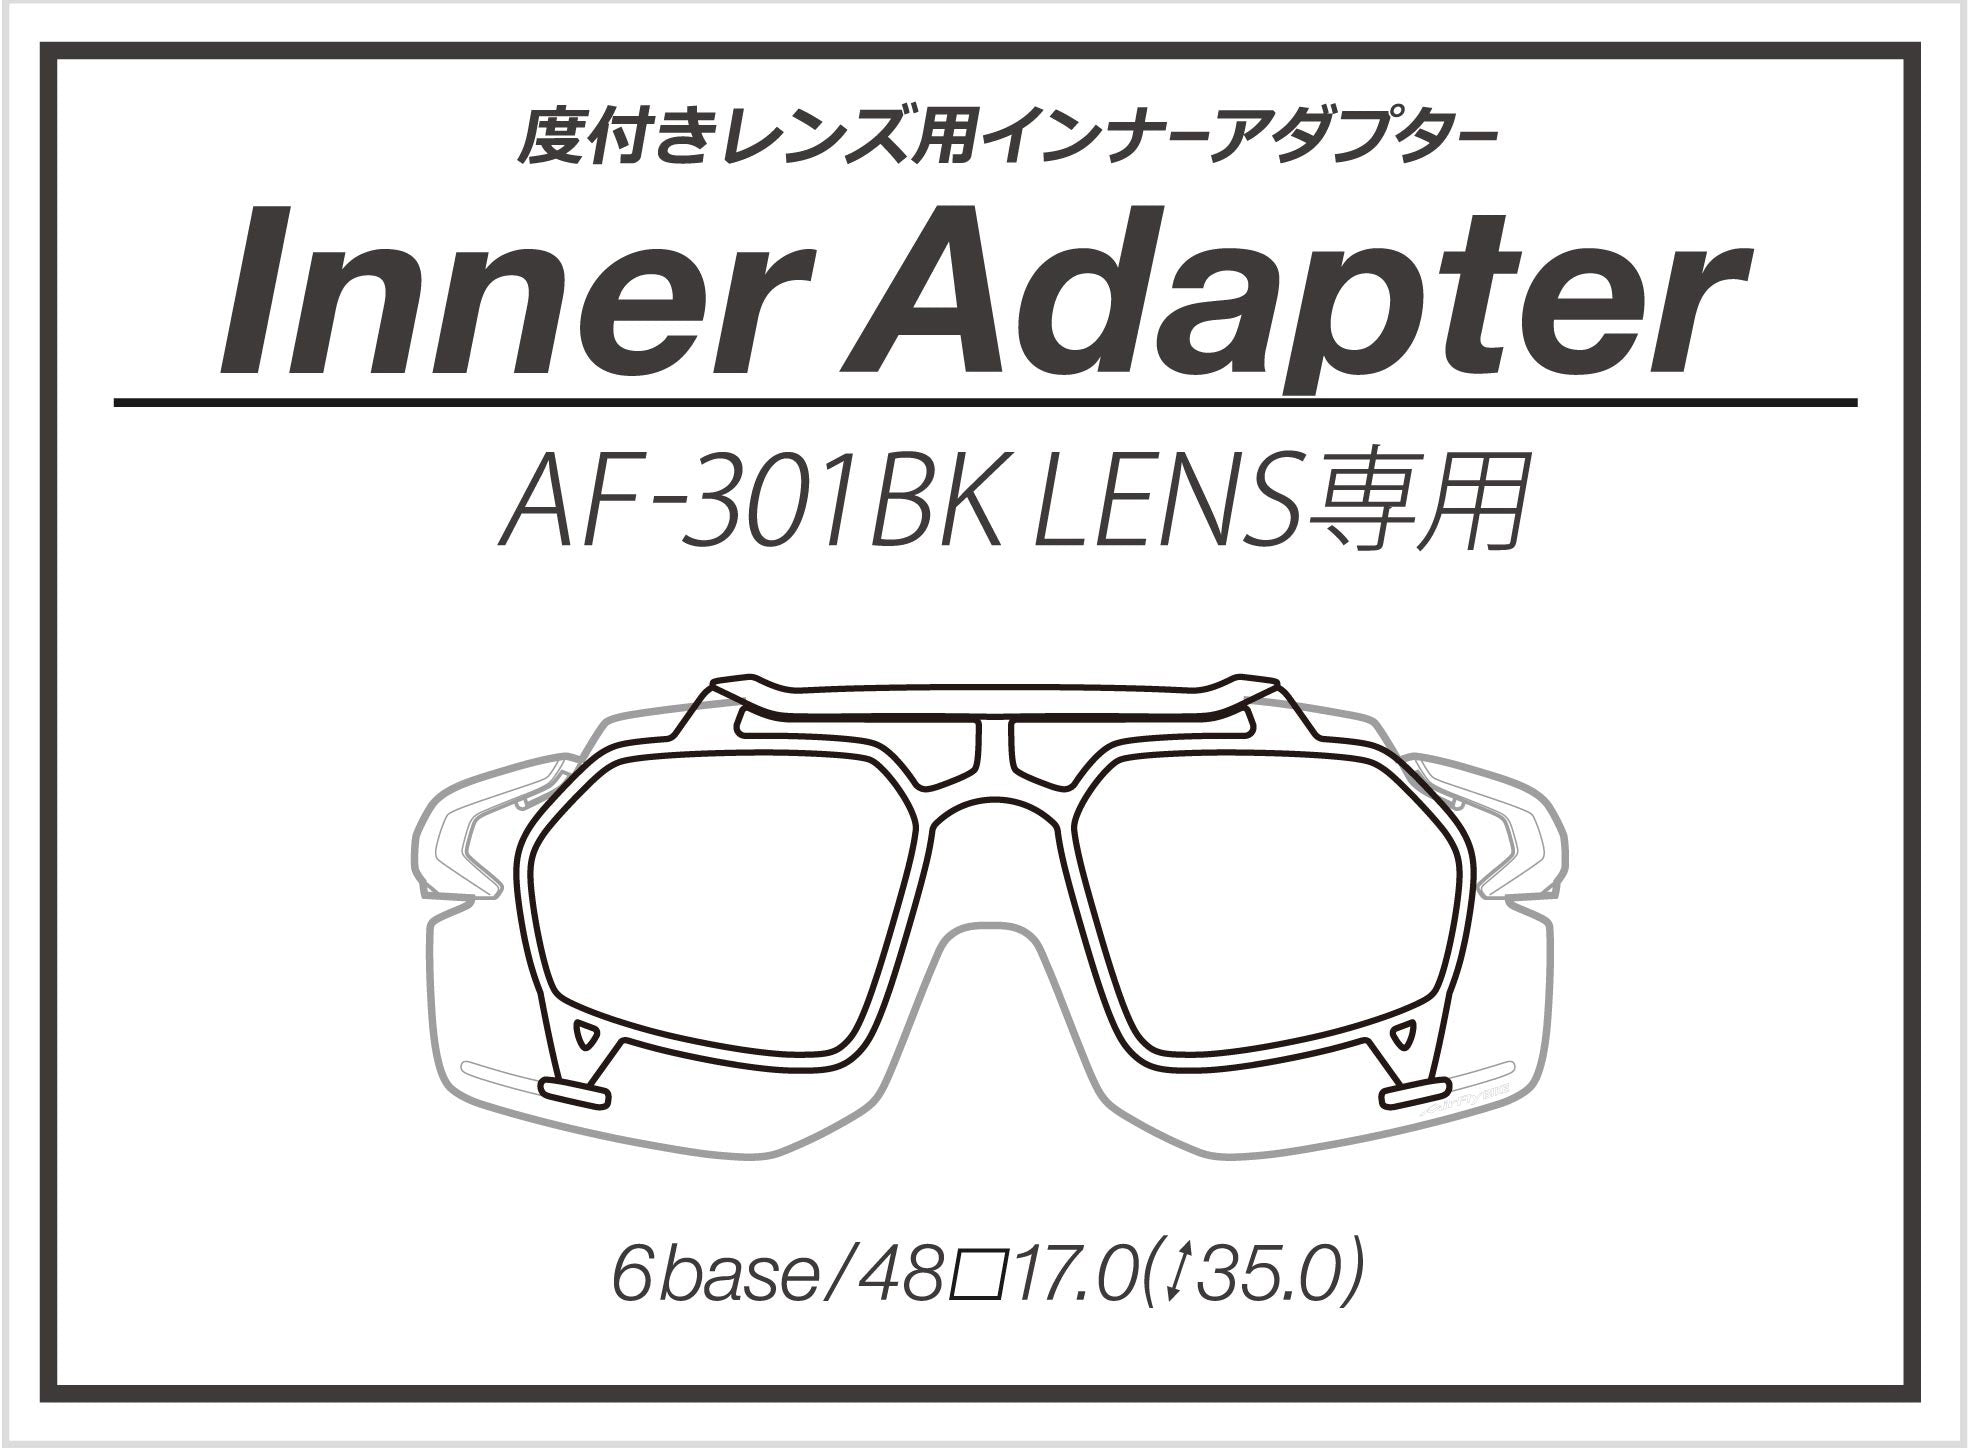 AirFly - AF301 Bike Inner Adapter Black Lens(Demo Lens) (只適用AF301Bike)【New】